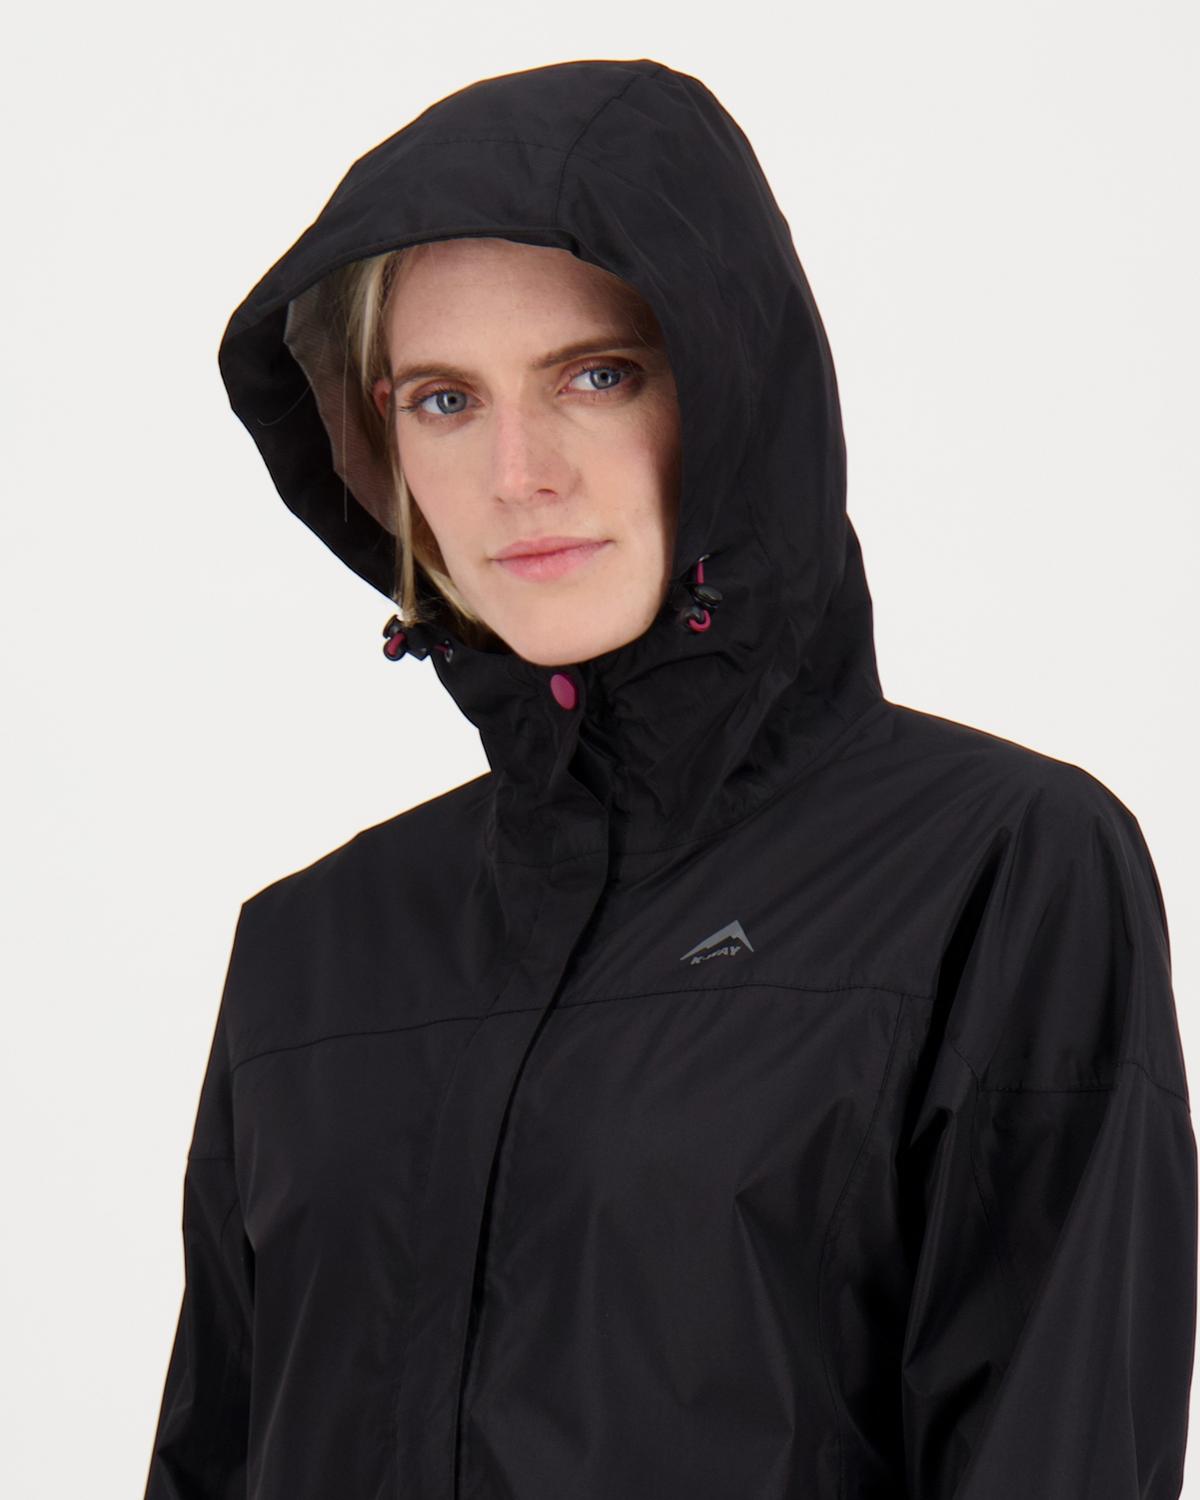 K-Way Women’s Cascade Waterproof Rain Jacket -  Black